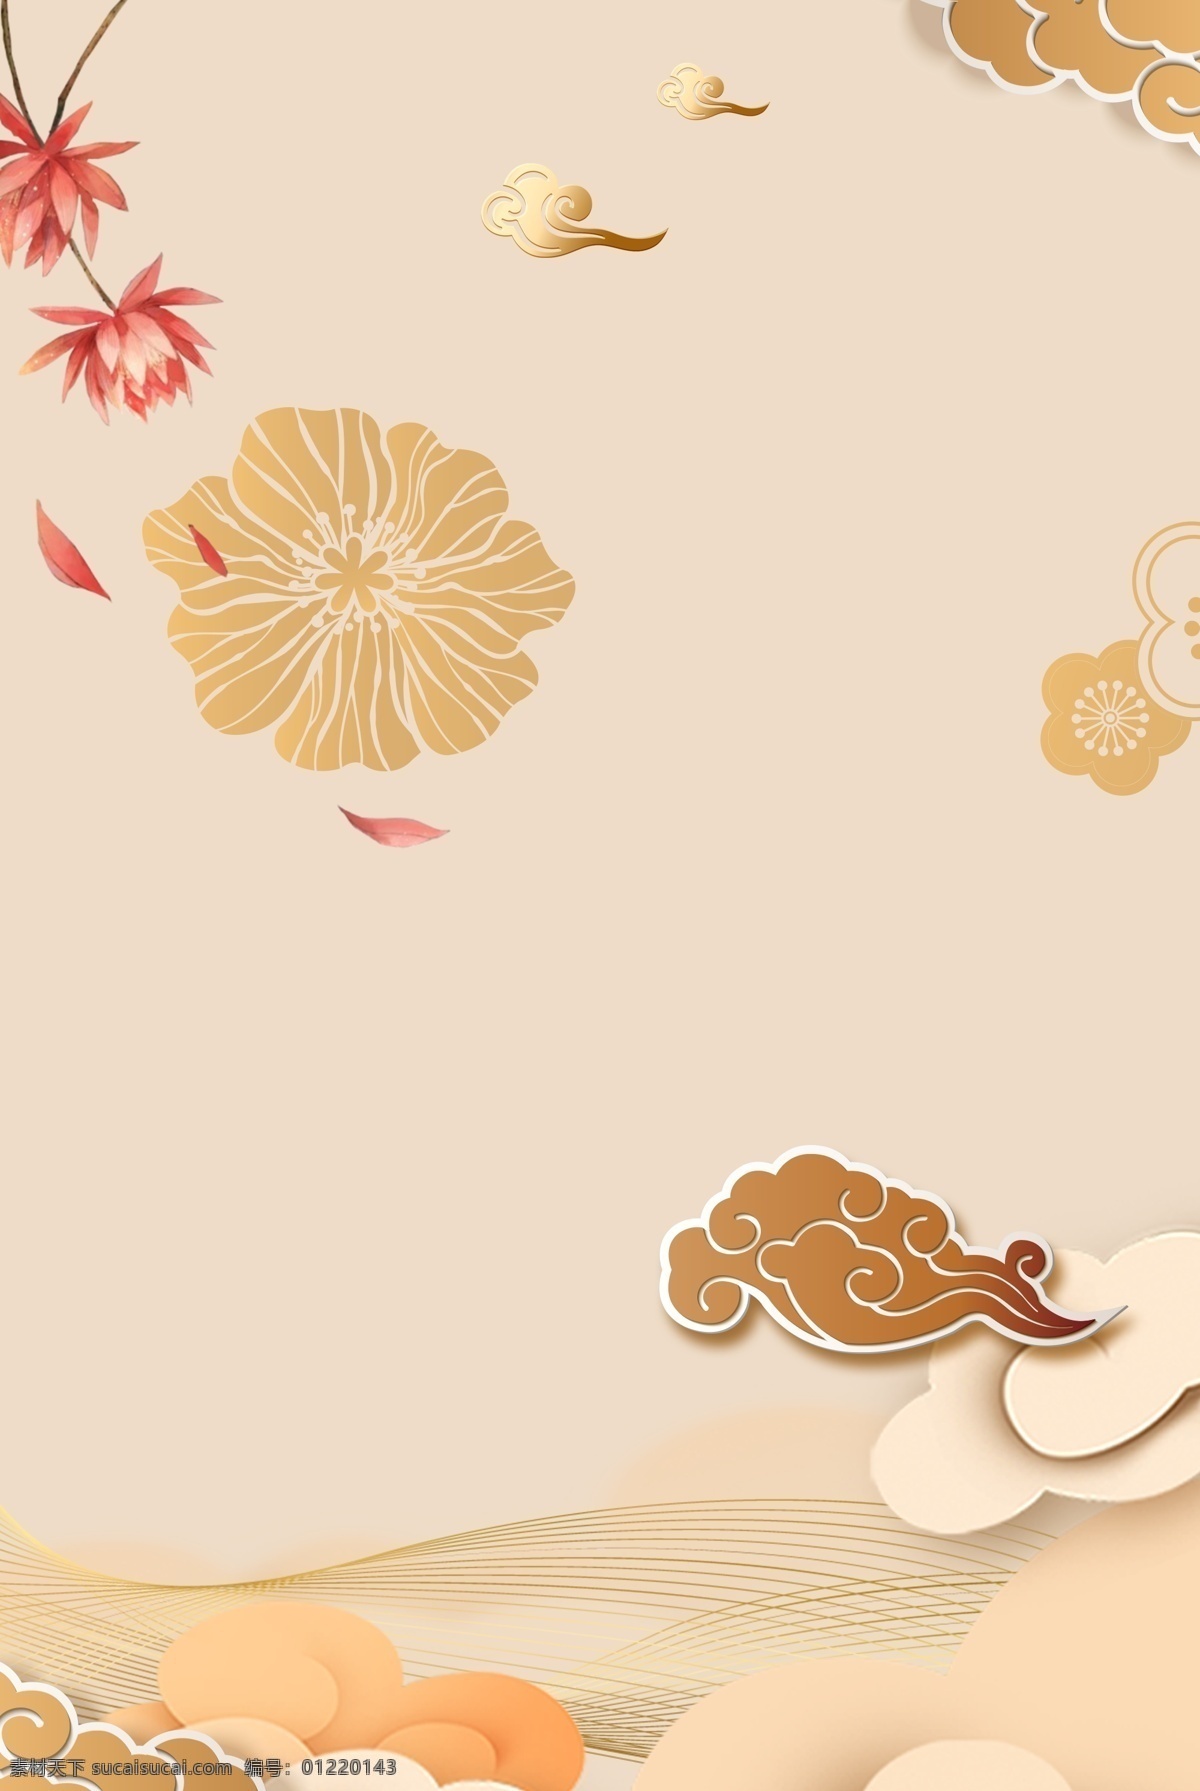 母亲节 海报 背景 古典 风 花朵 淡雅 文化艺术 传统文化